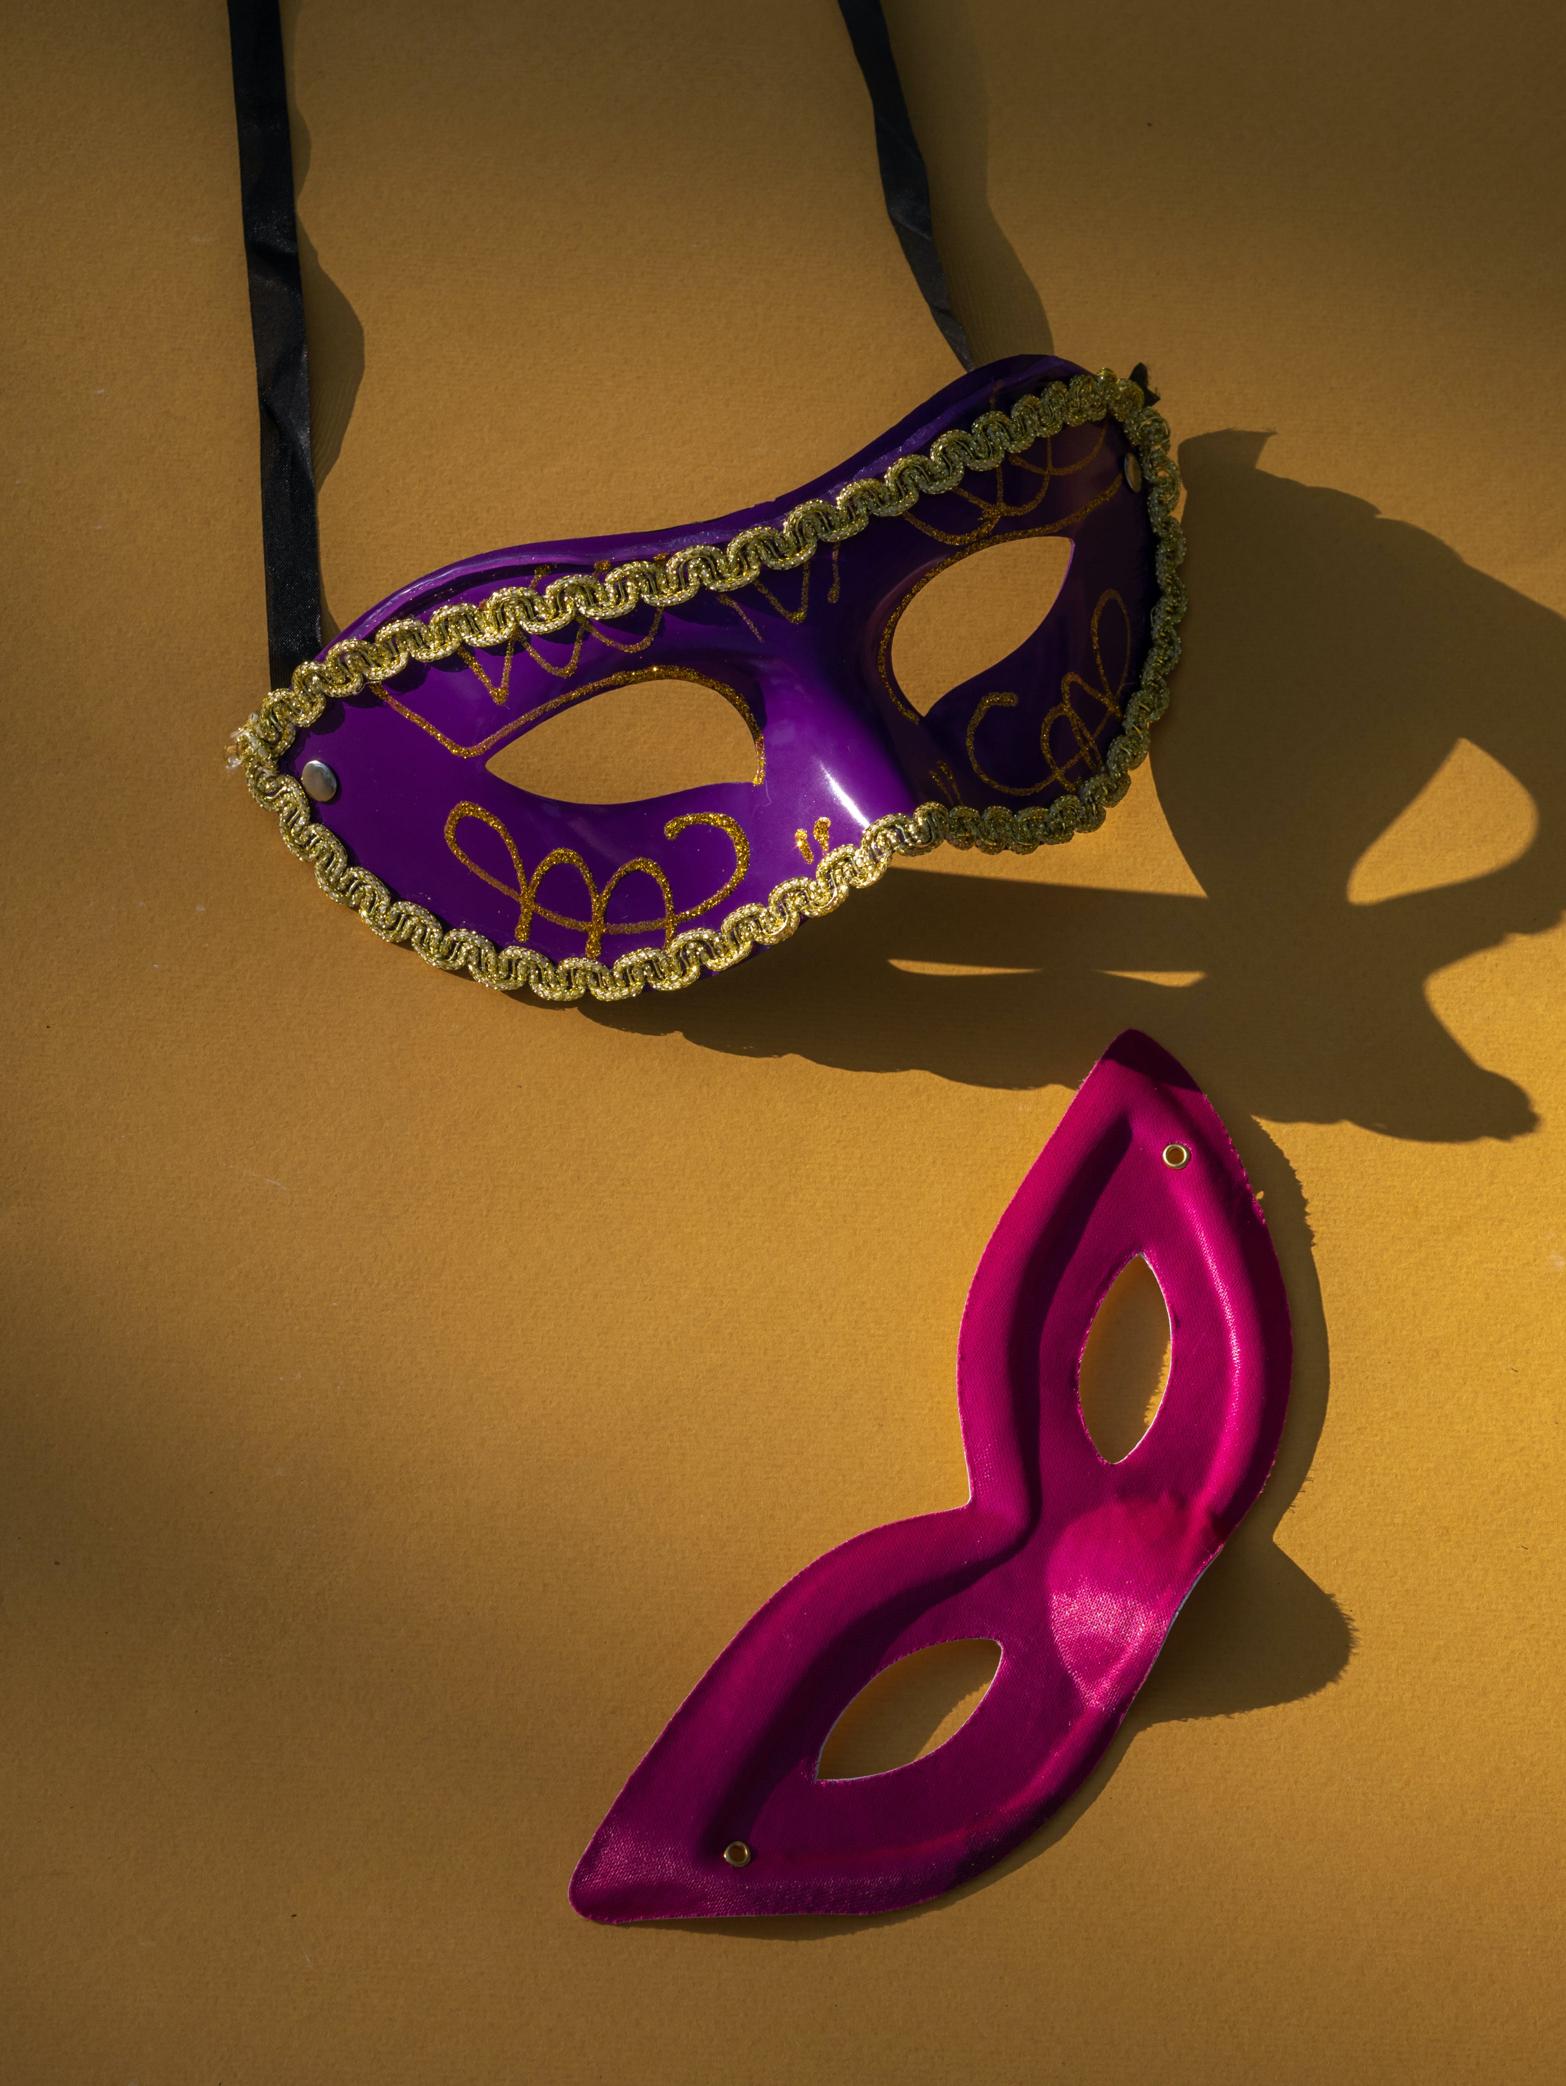 I costumi e le maschere tradizionali del carnevale salernitano